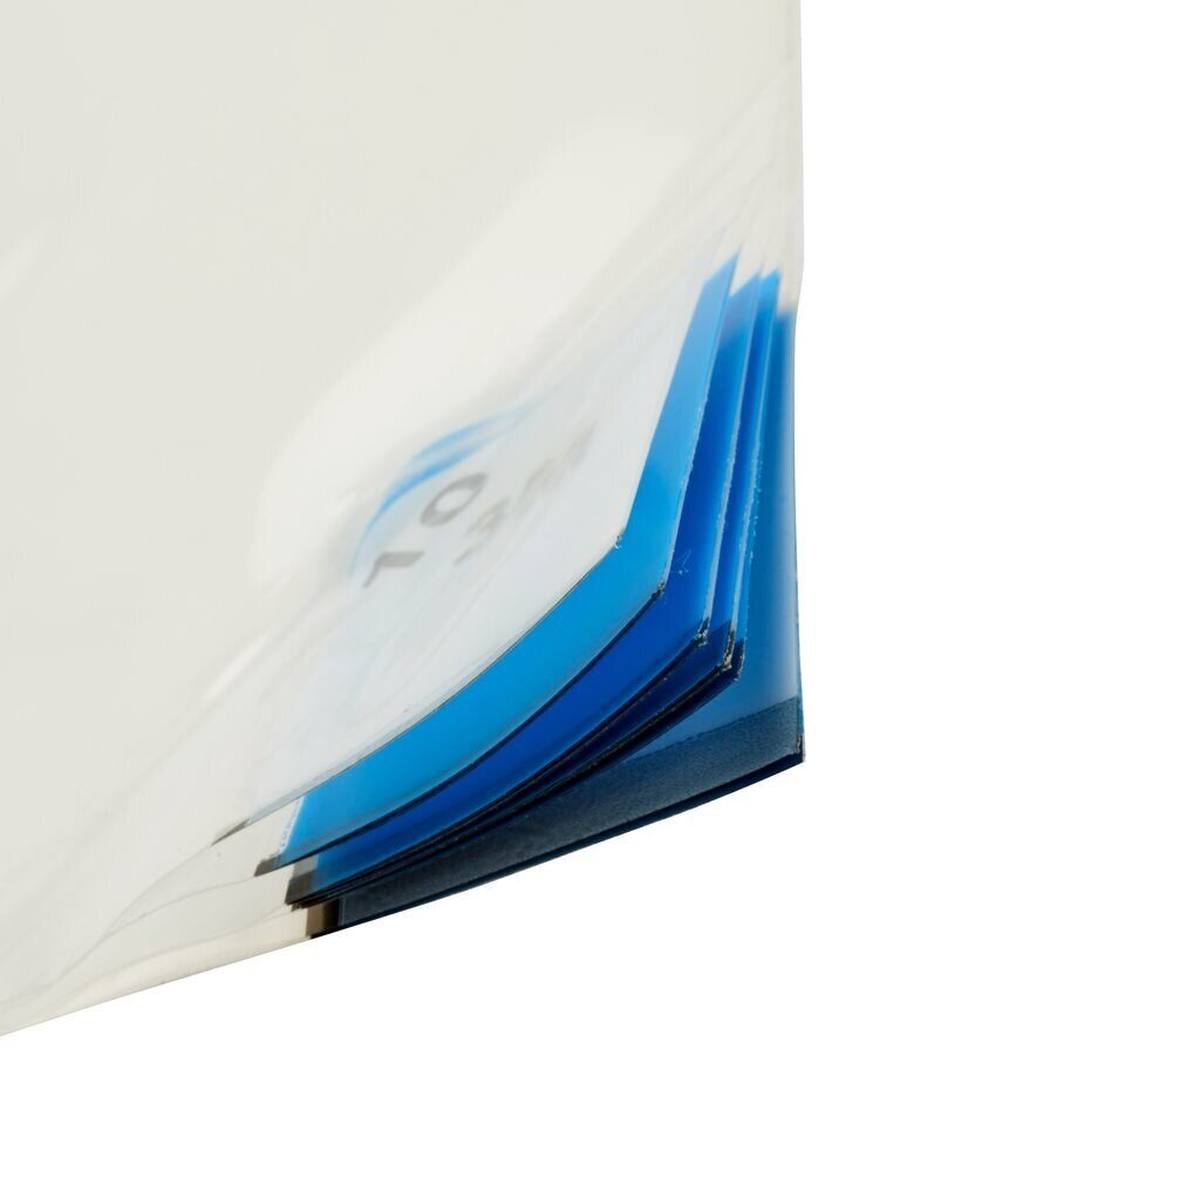 3M 4300 Tapis adhésif pour poussières fines Nomad, blanc, 1,15m x 0,45m, 40pcs couches de polyéthylène transparent